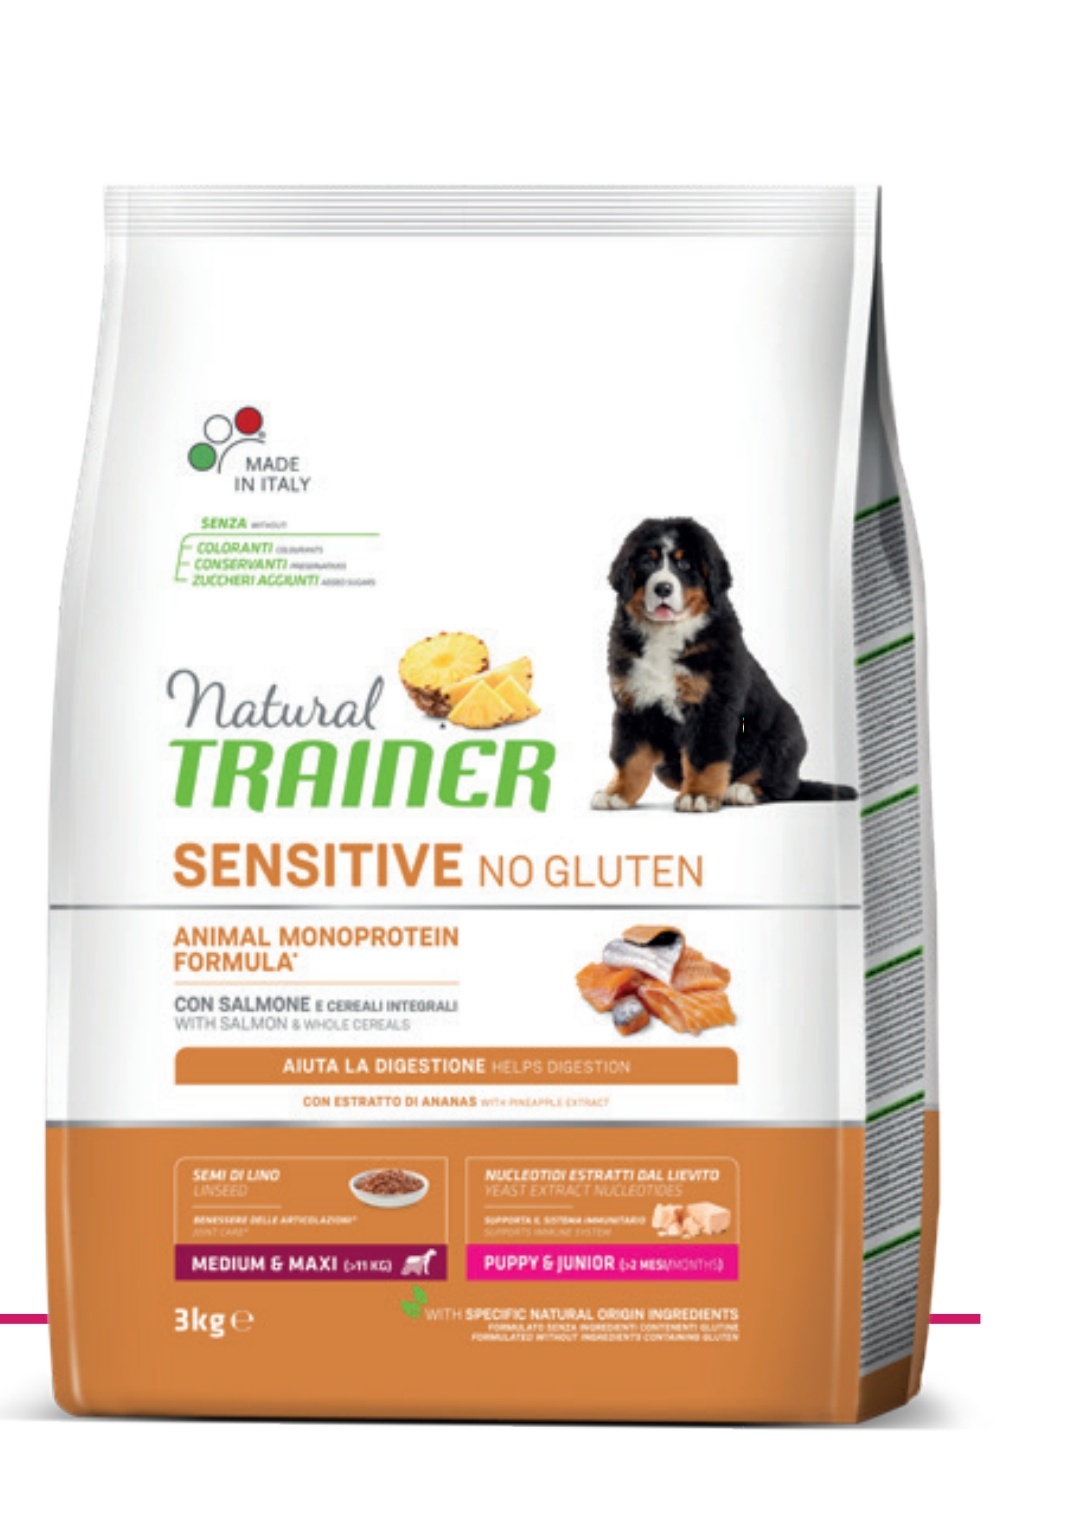 Trainer Sensitive No Gluten Puppy & Junior (>2 mesi) con Salmone e Cereali Integrali 3kg